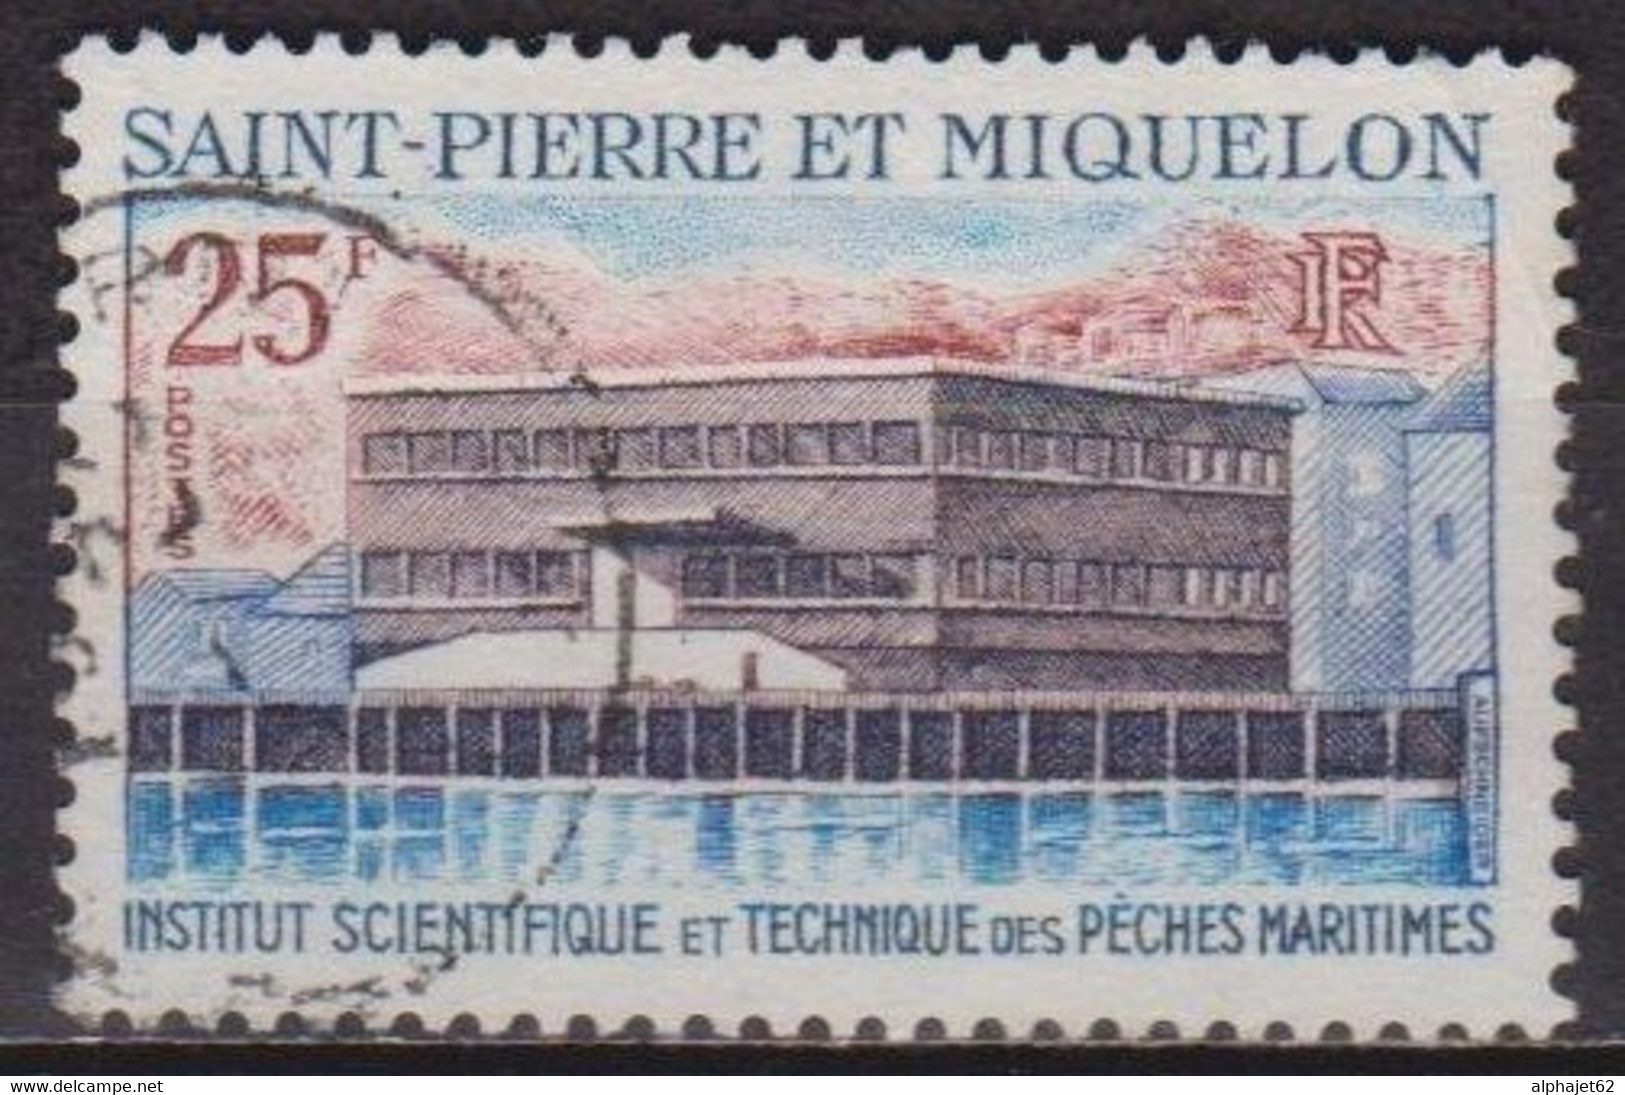 Batiment - SAINT PIERRE ET MIQUELON - La Trésorerie - N° 387 - 1969 - Used Stamps